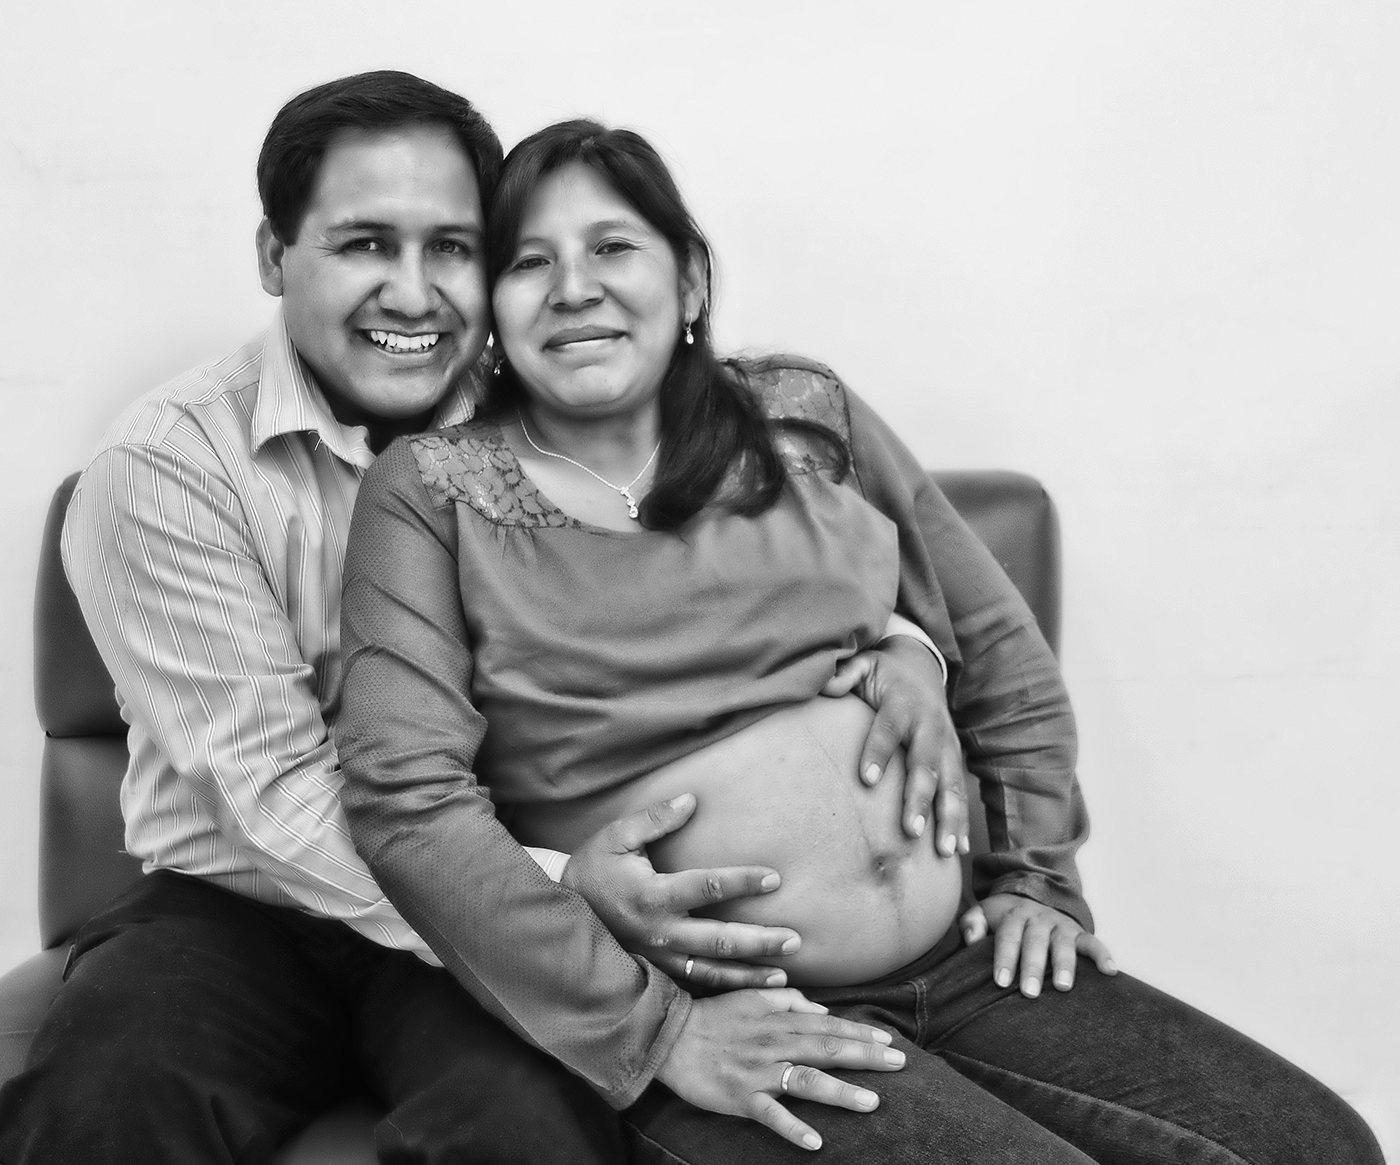 embarazada pregnancy Juan Carlos Nieves Fotografia dirección de fotografía arequipa peru